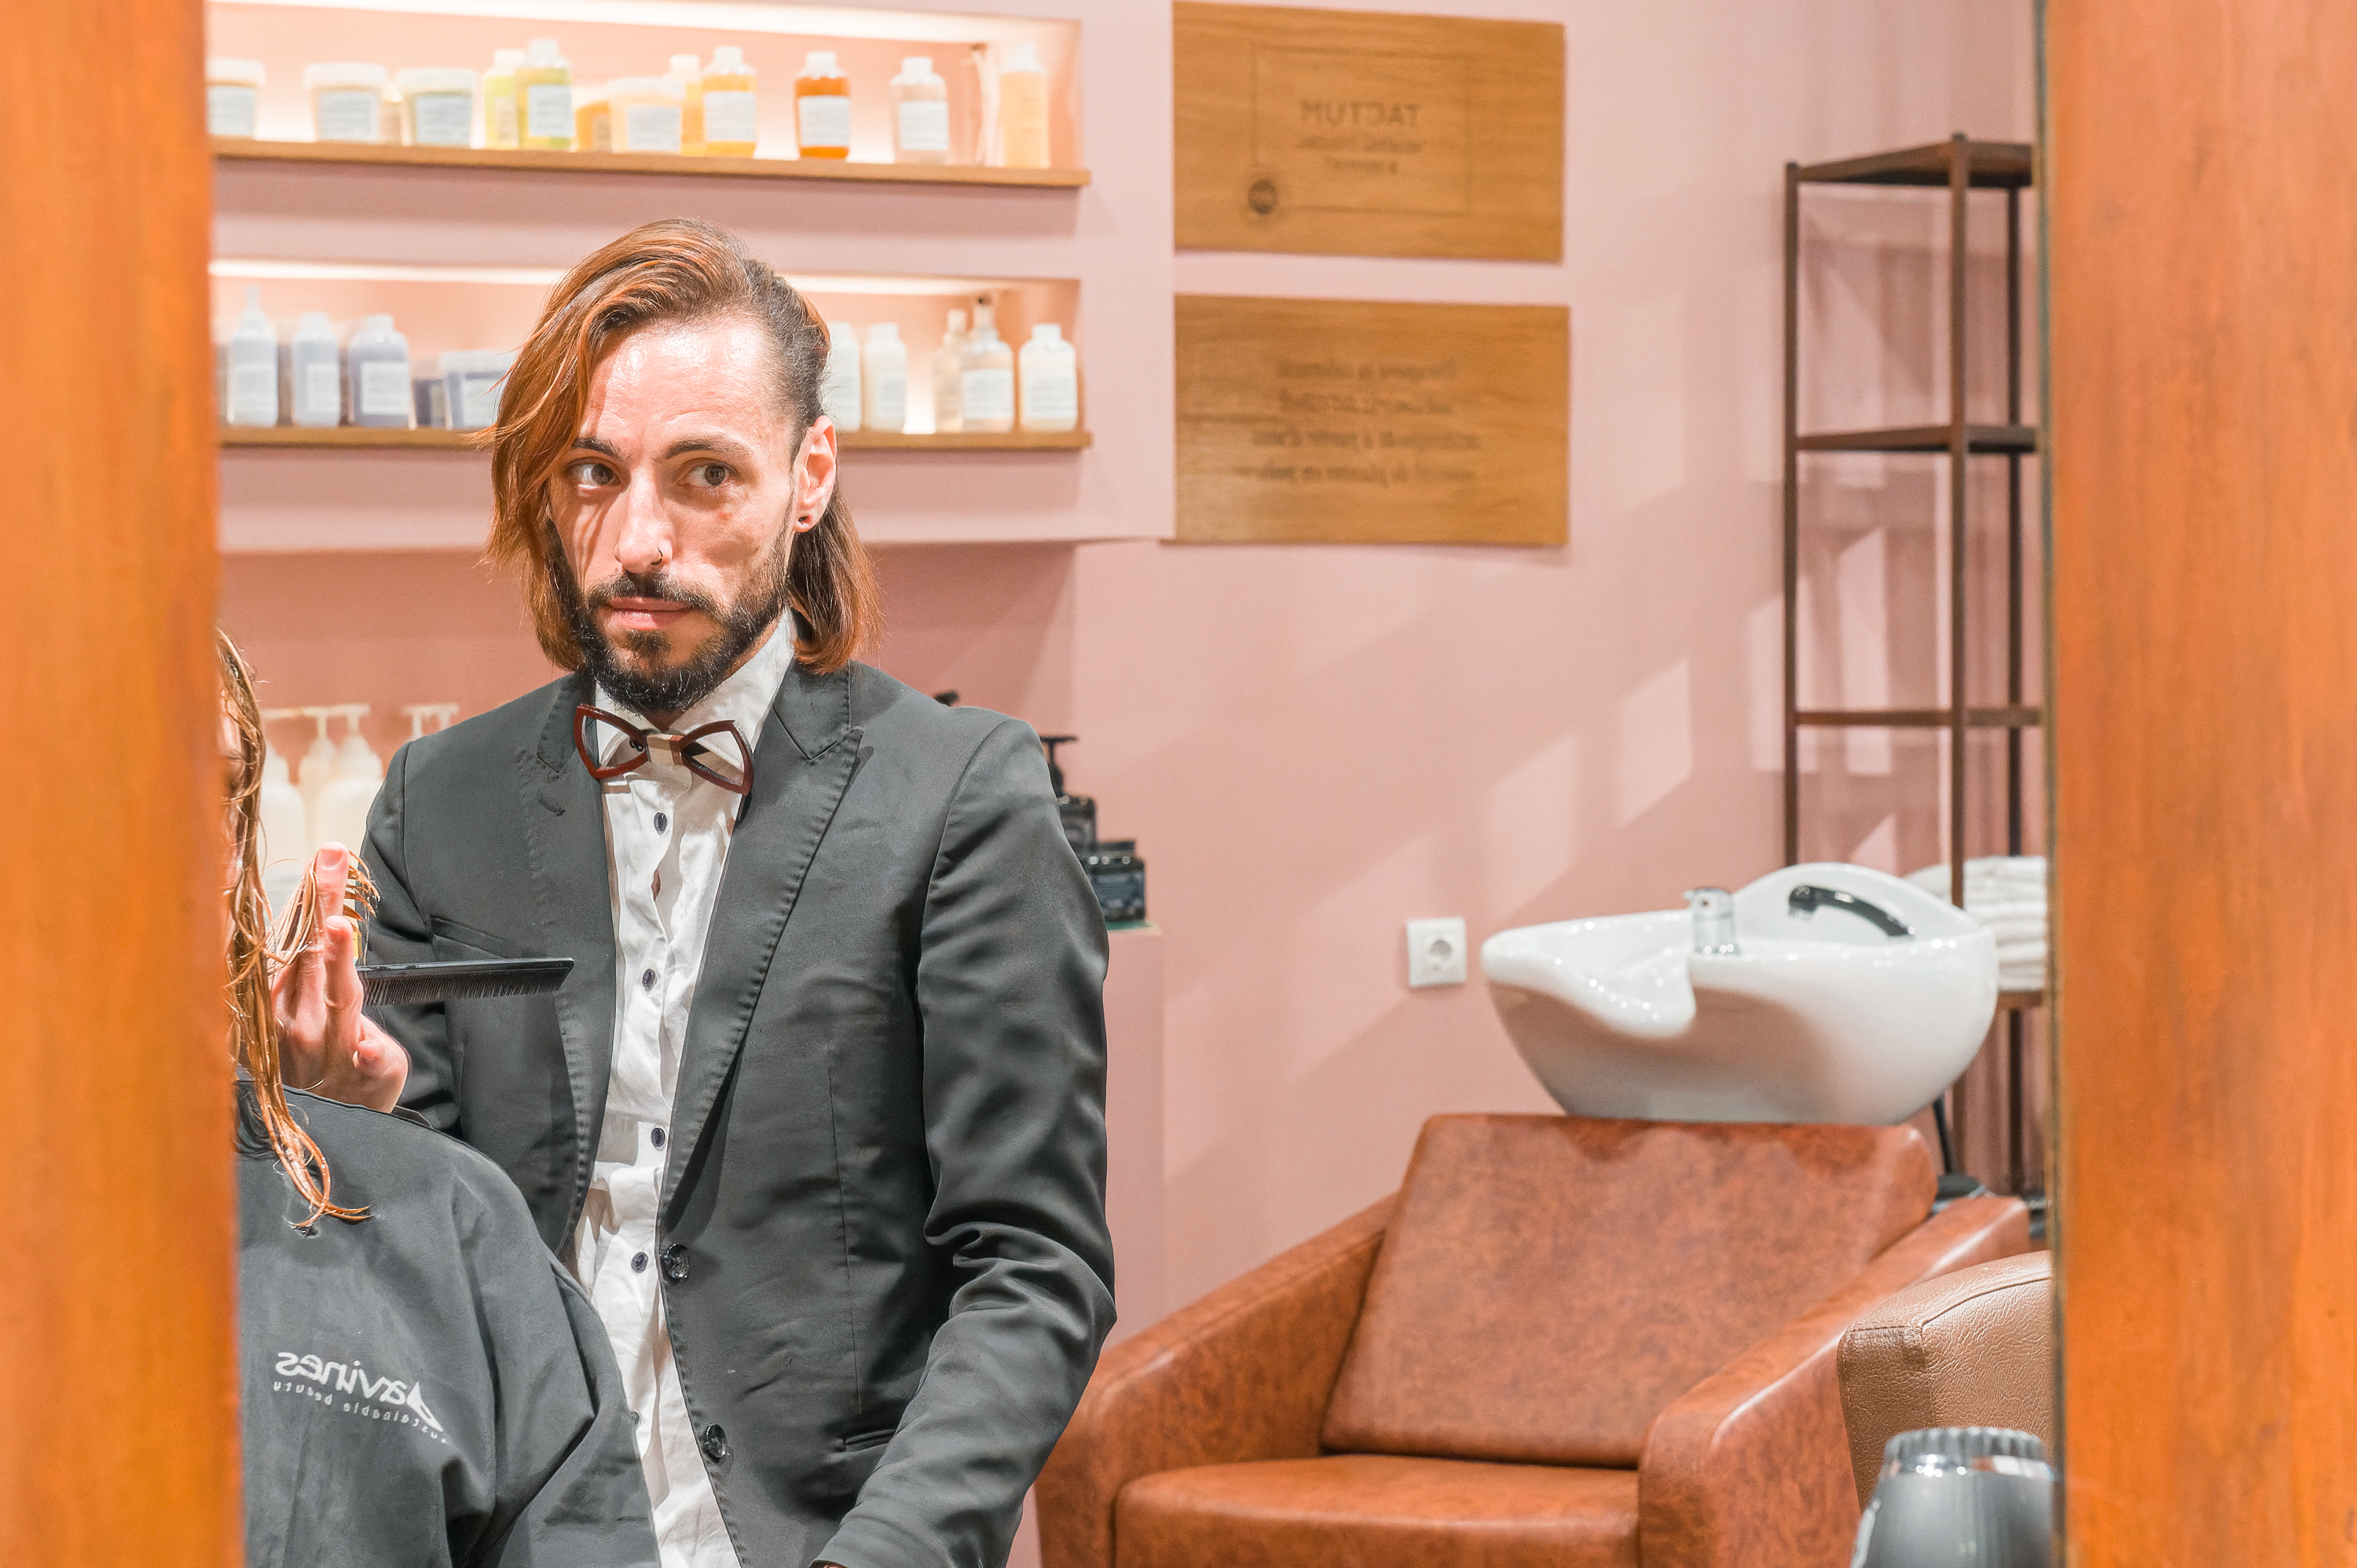 Salon de coiffure francophone à Barcelone